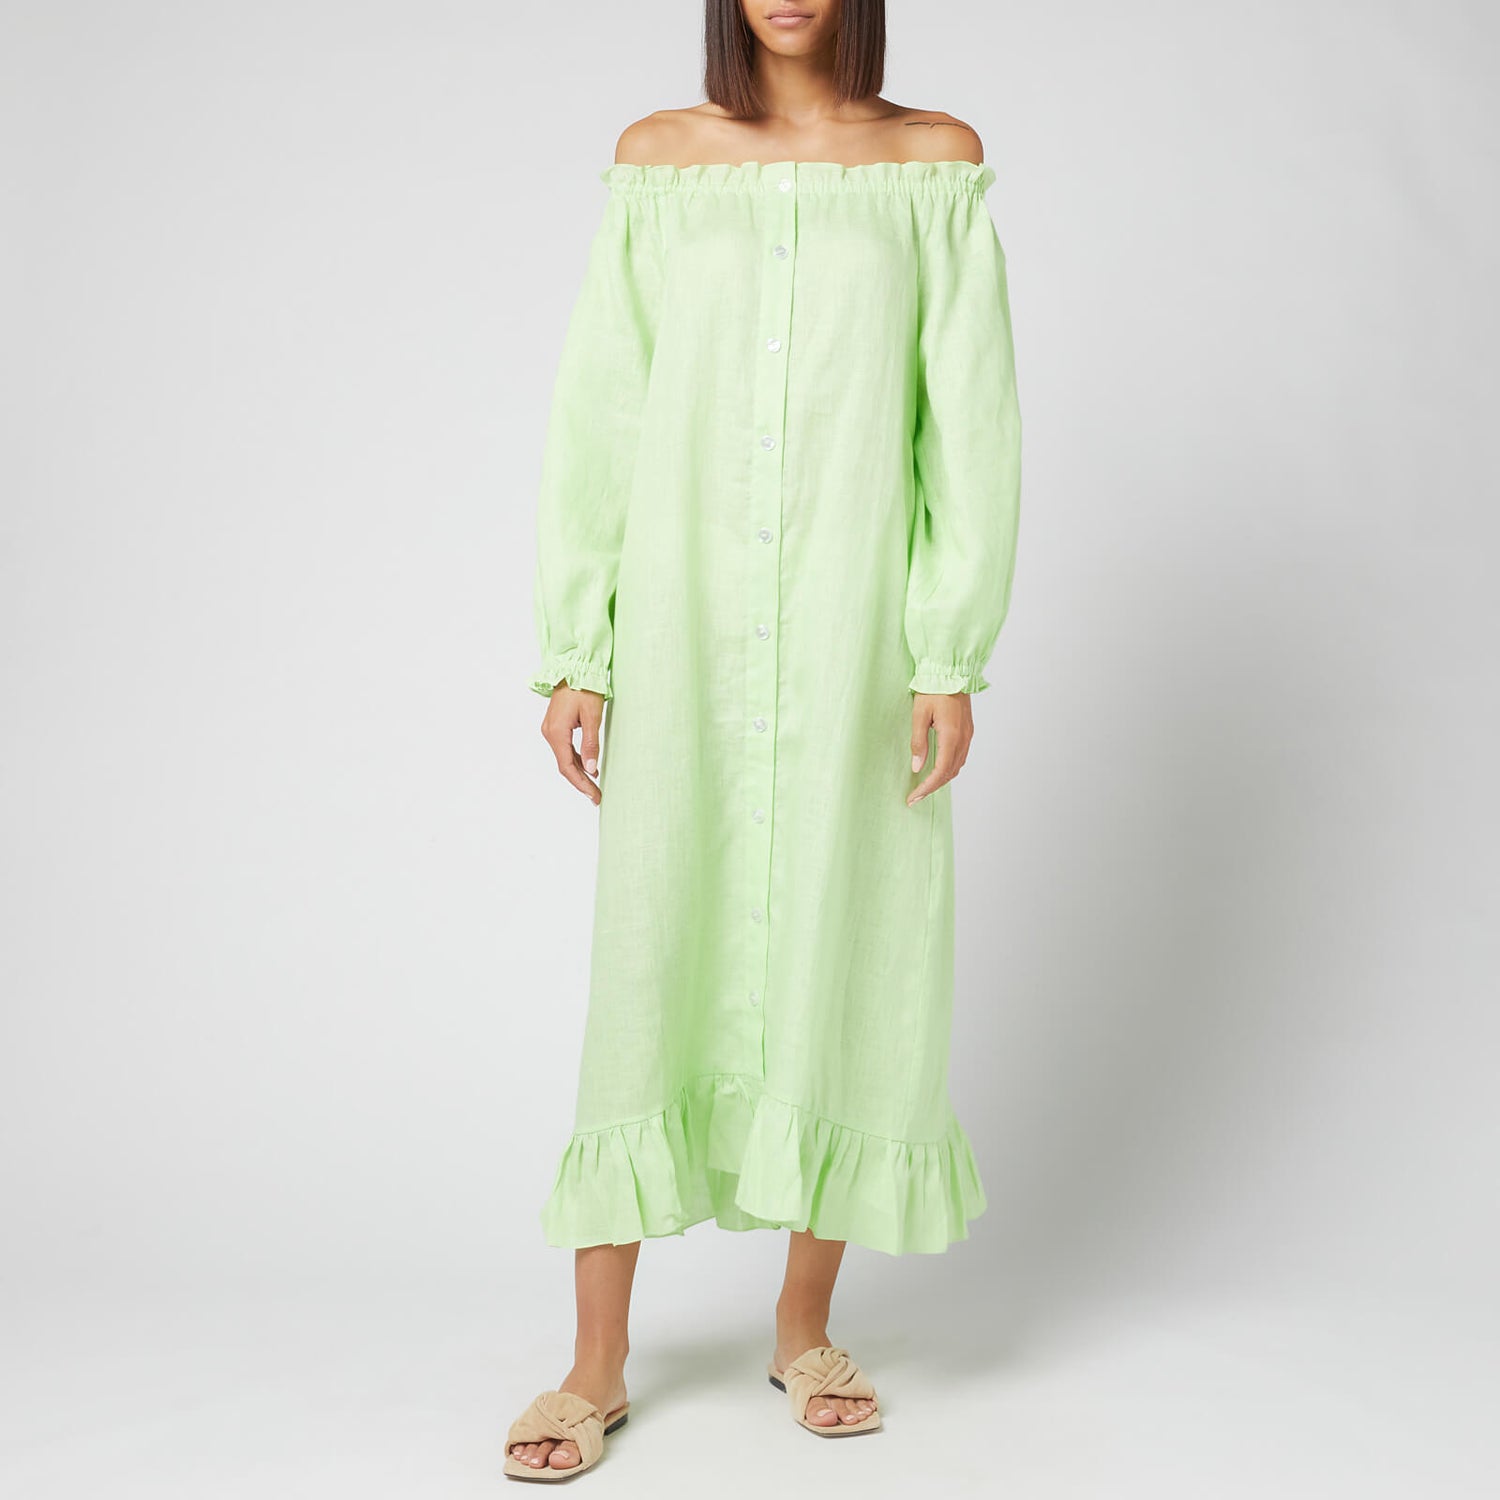 Sleeper Women's Loungewear Dress - Lime - One Size